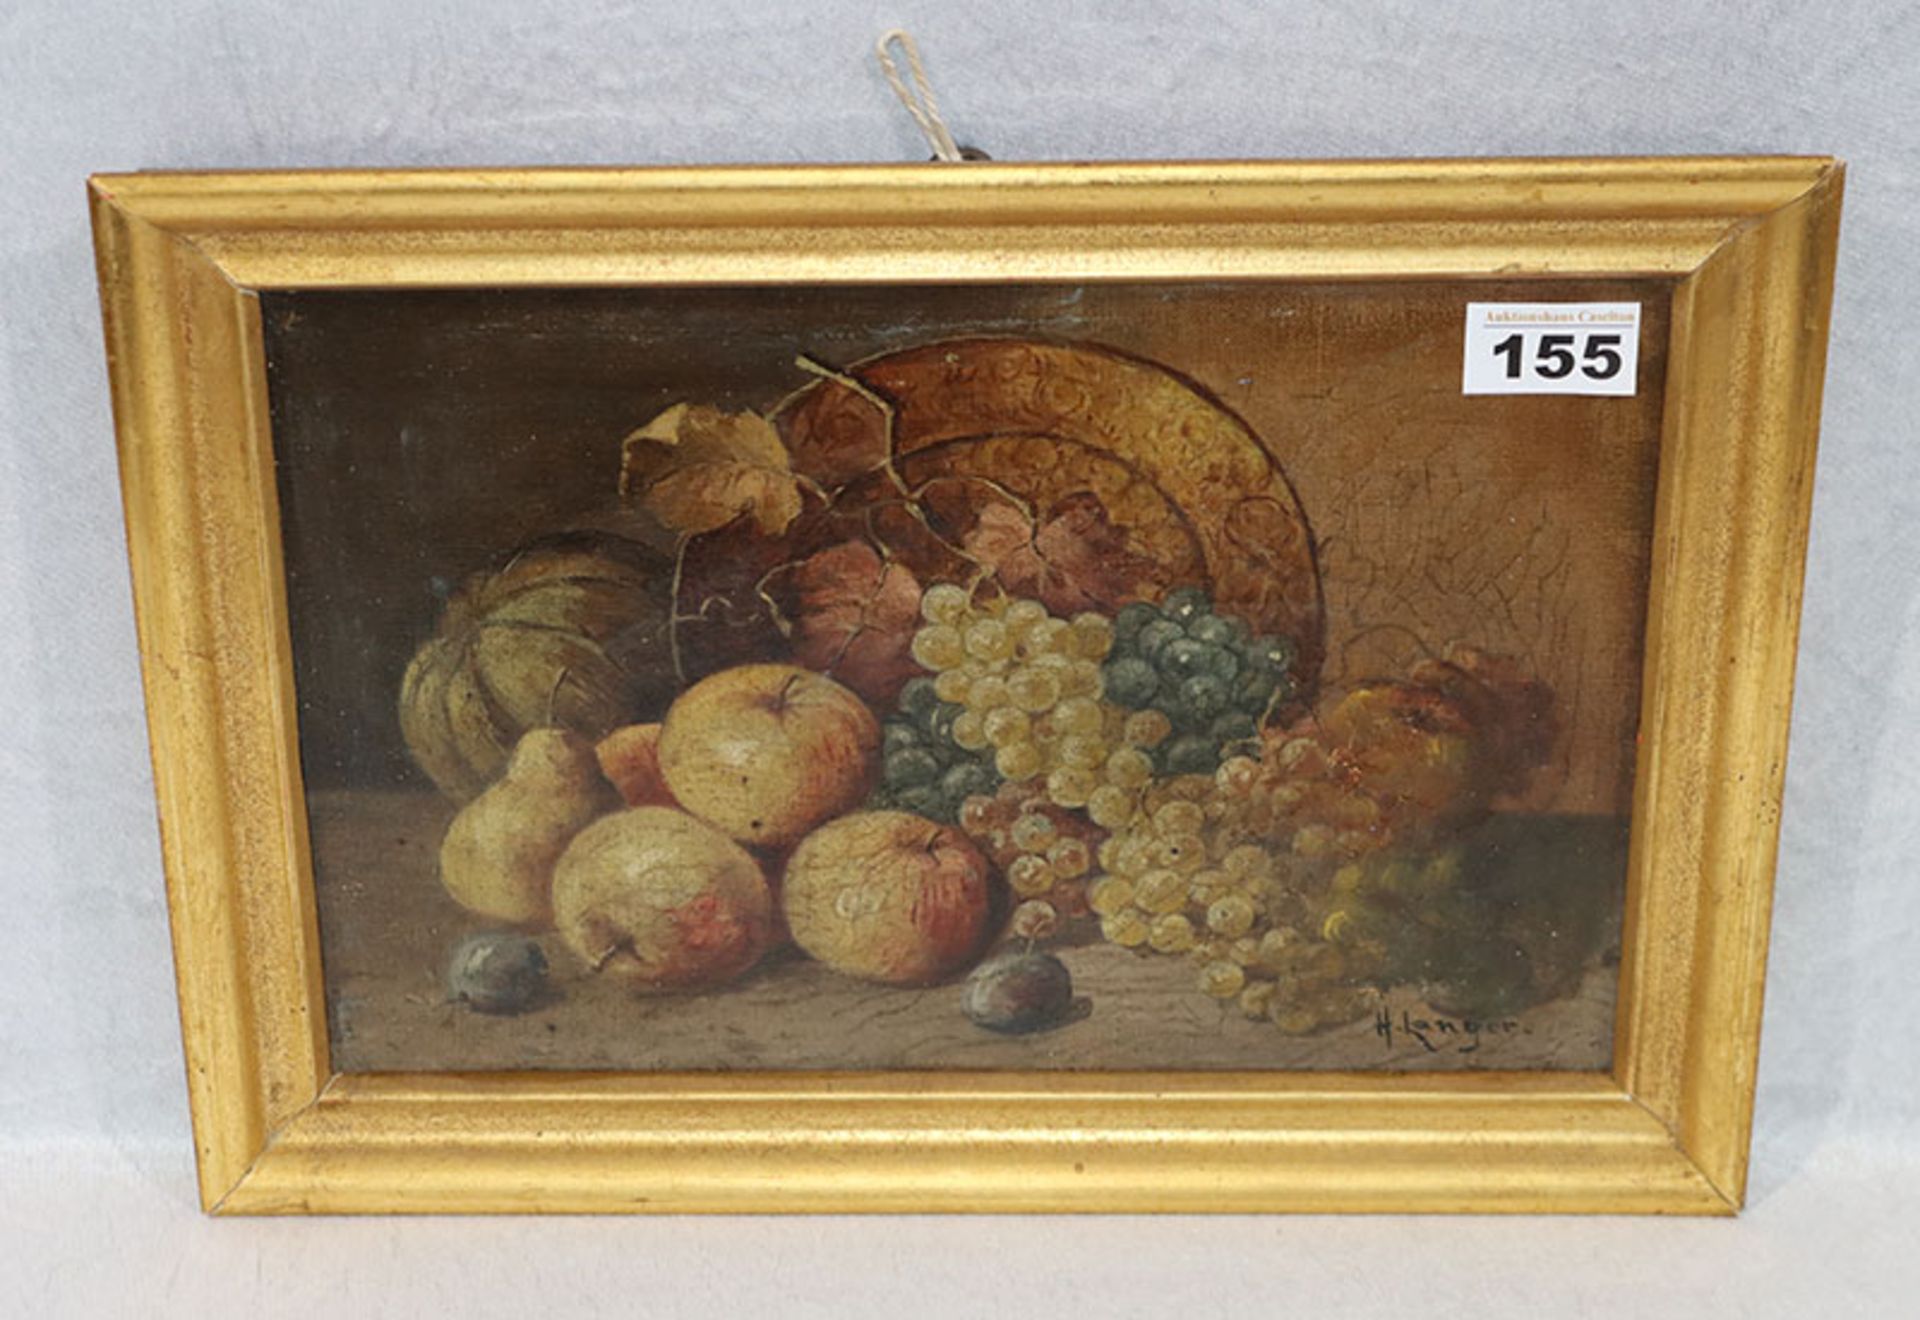 Gemälde ÖL/LW 'Früchtestillleben', signiert H. Langer, österreichsicher Maler um 1900, LW teils